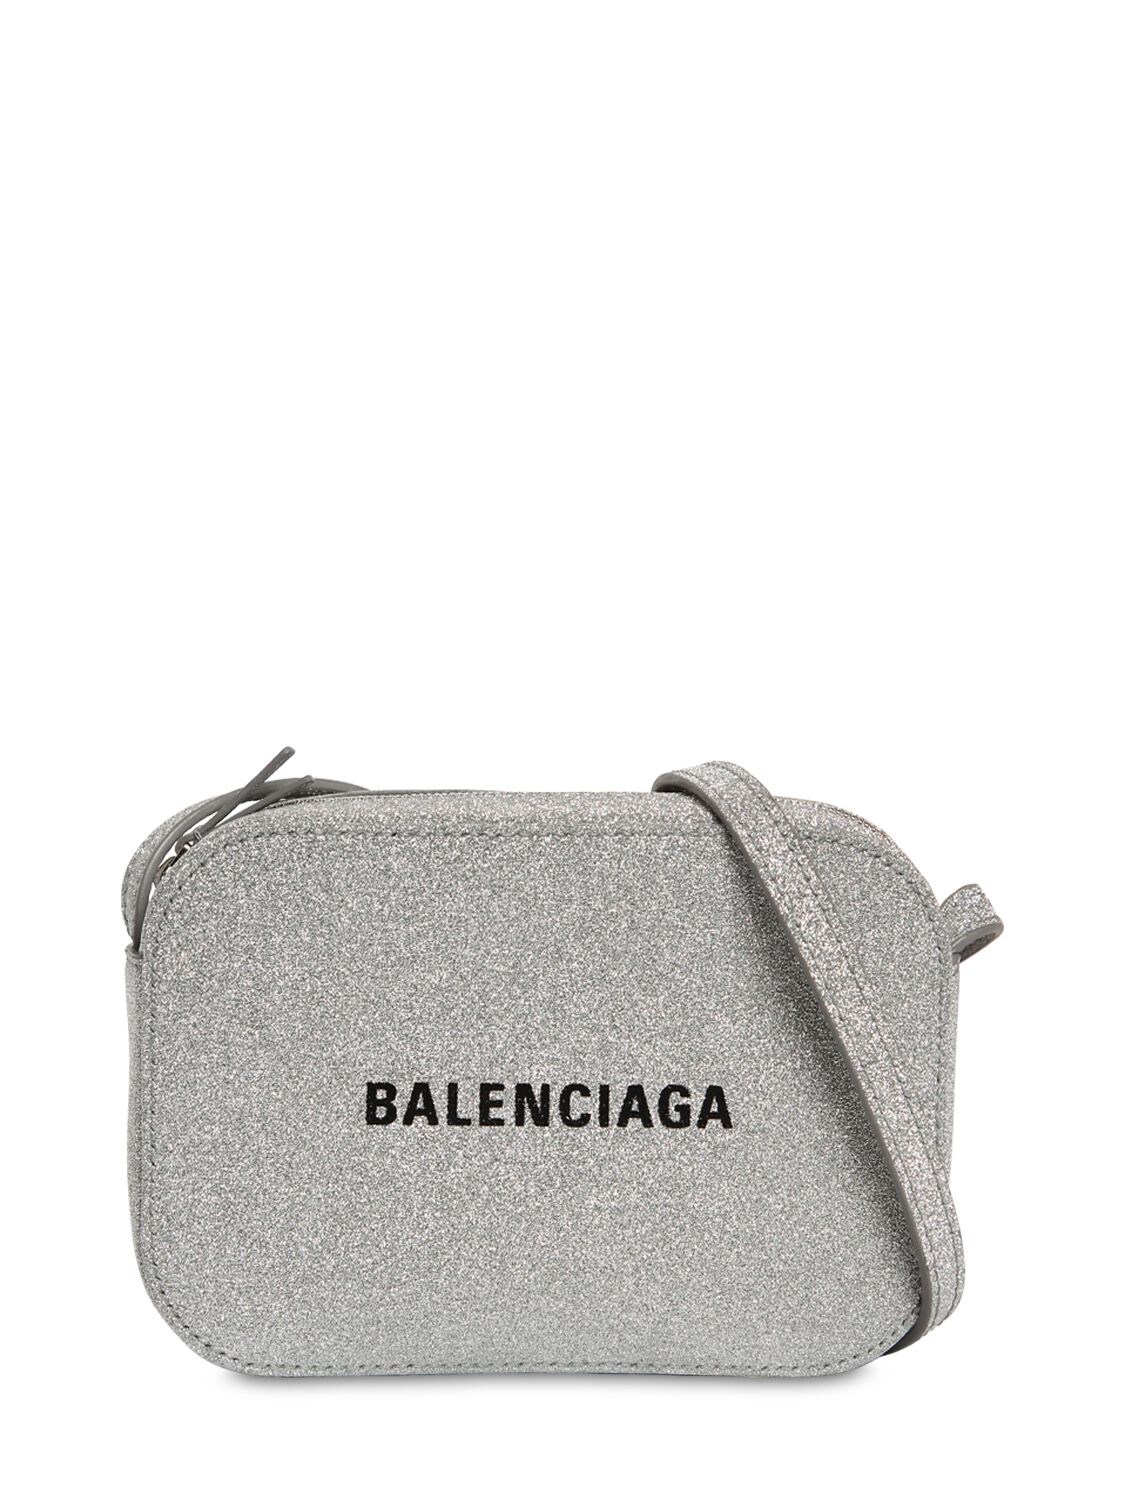 BALENCIAGA “EVERYDAY”闪粉皮革相机包,70IIUT029-ODEWNG2